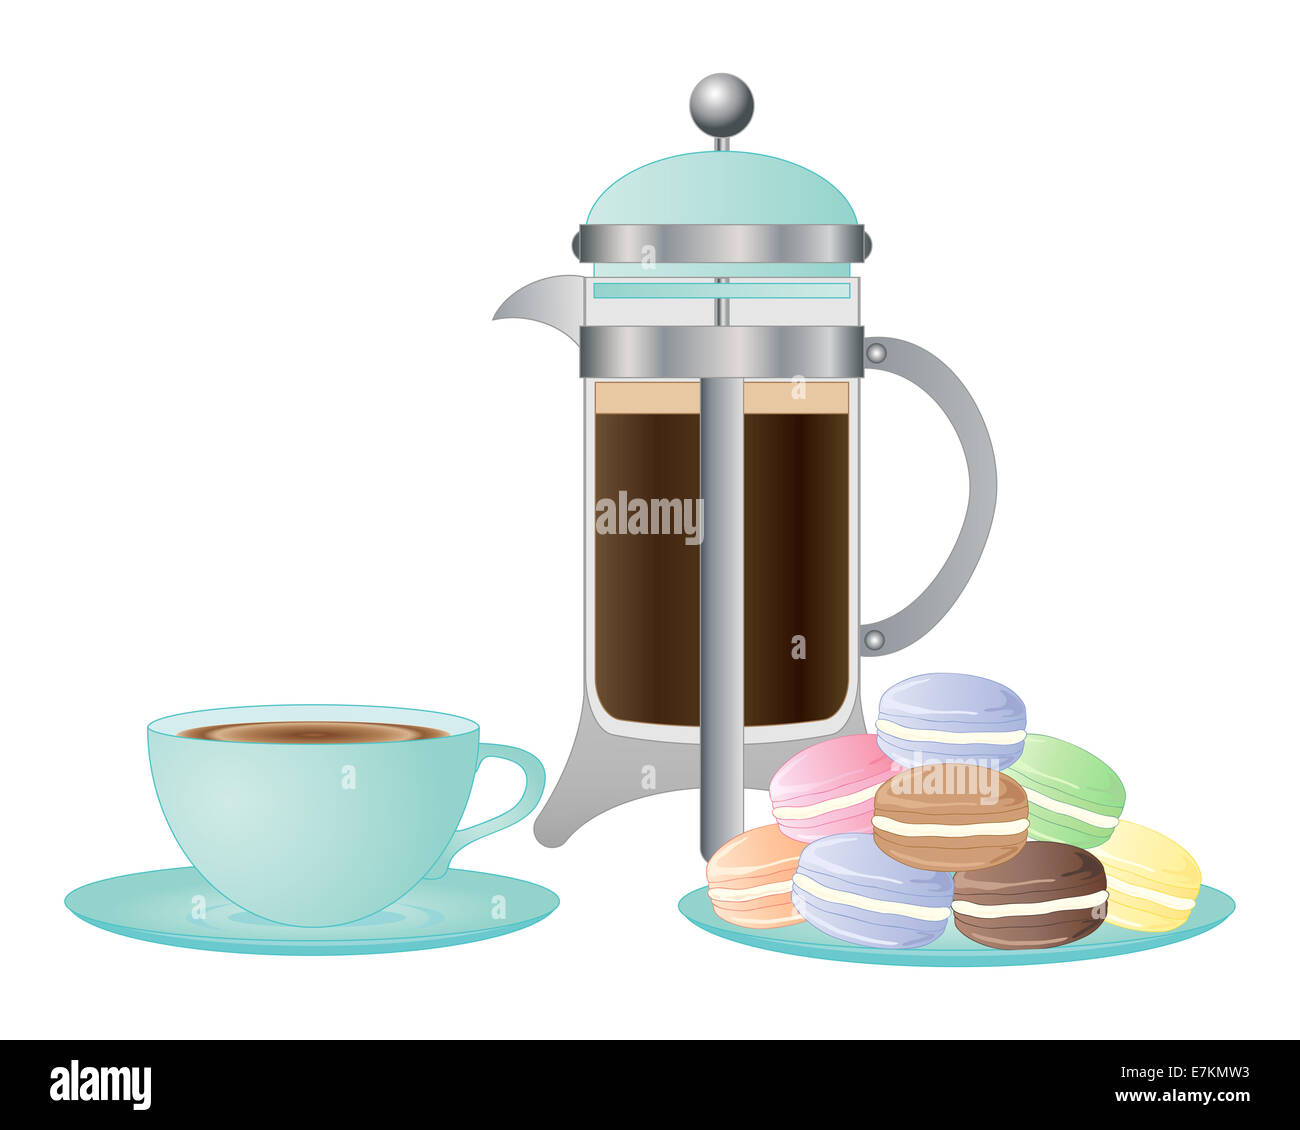 Une illustration d'un élégant café tasse et soucoupe et une assiette de fantaisies de macarons sur fond blanc Banque D'Images